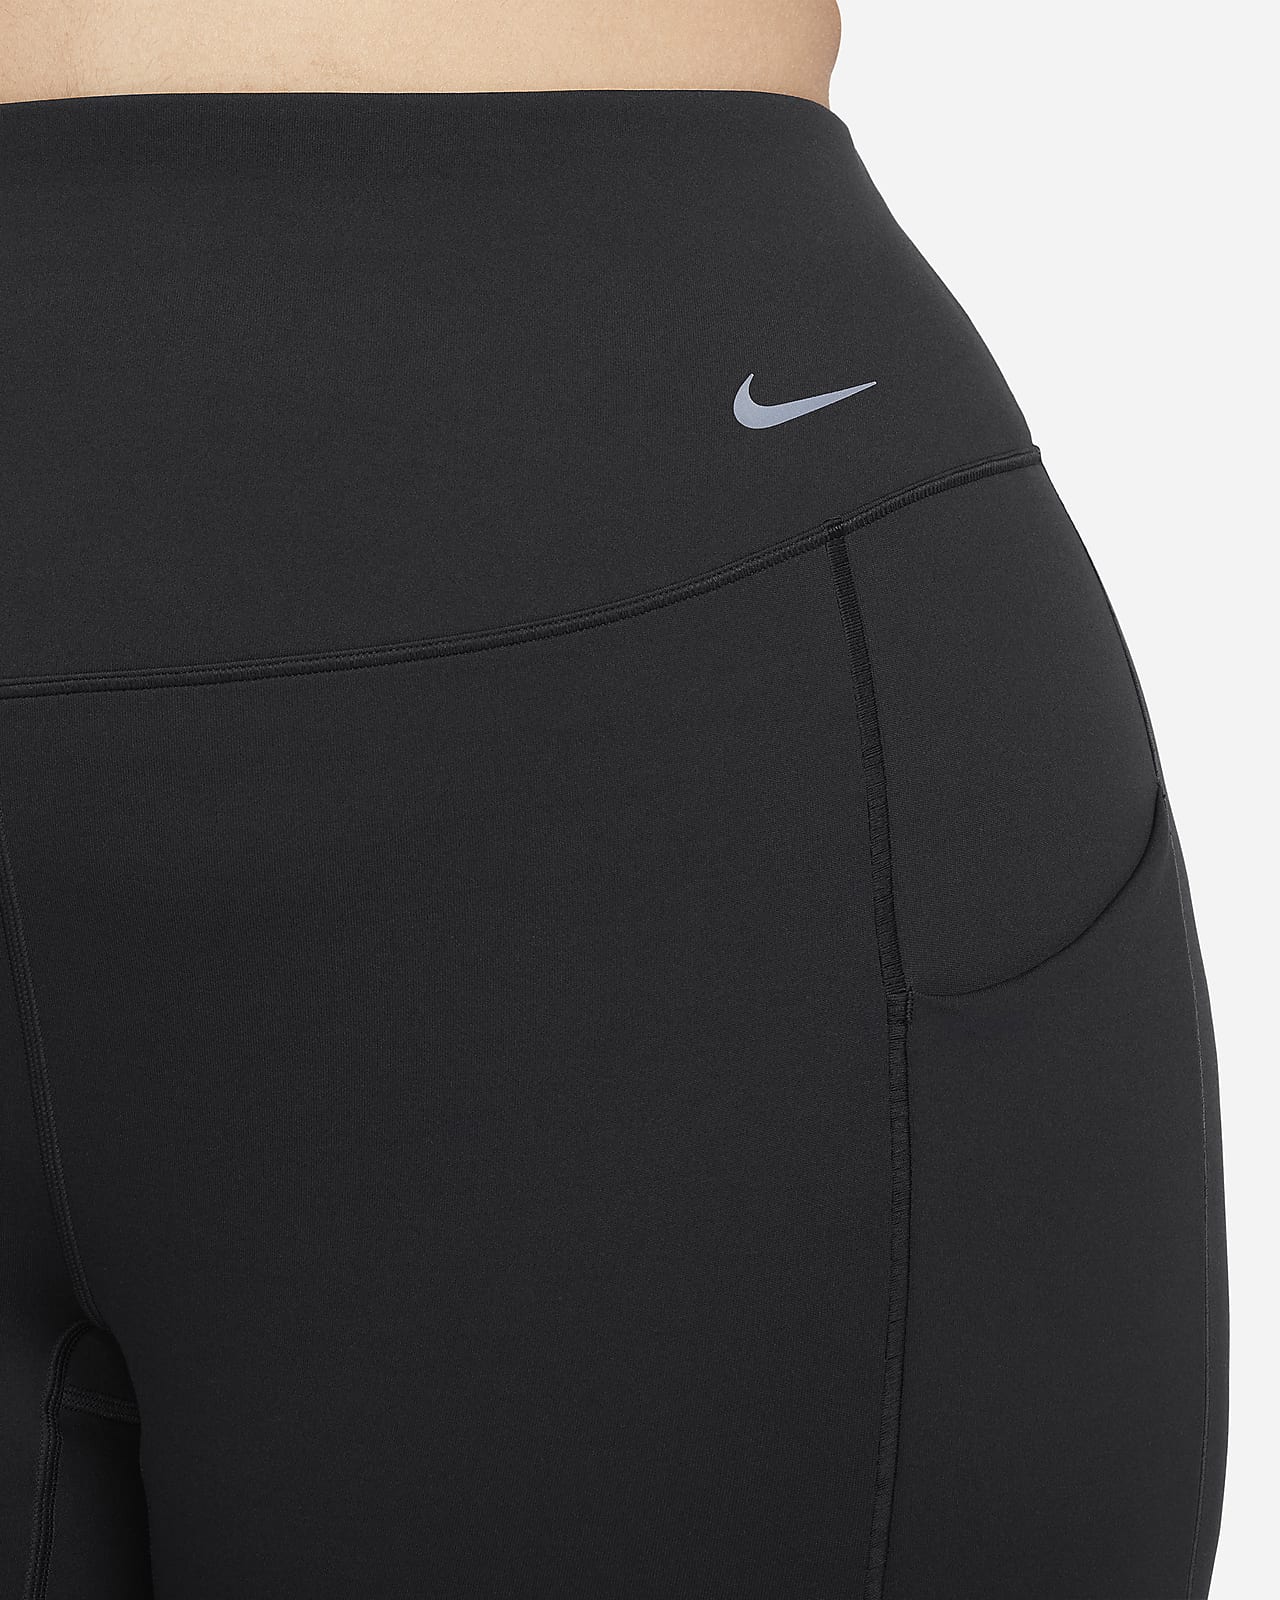 Nike Pro középmagas derekú, teljes hosszúságú női leggings. Nike HU